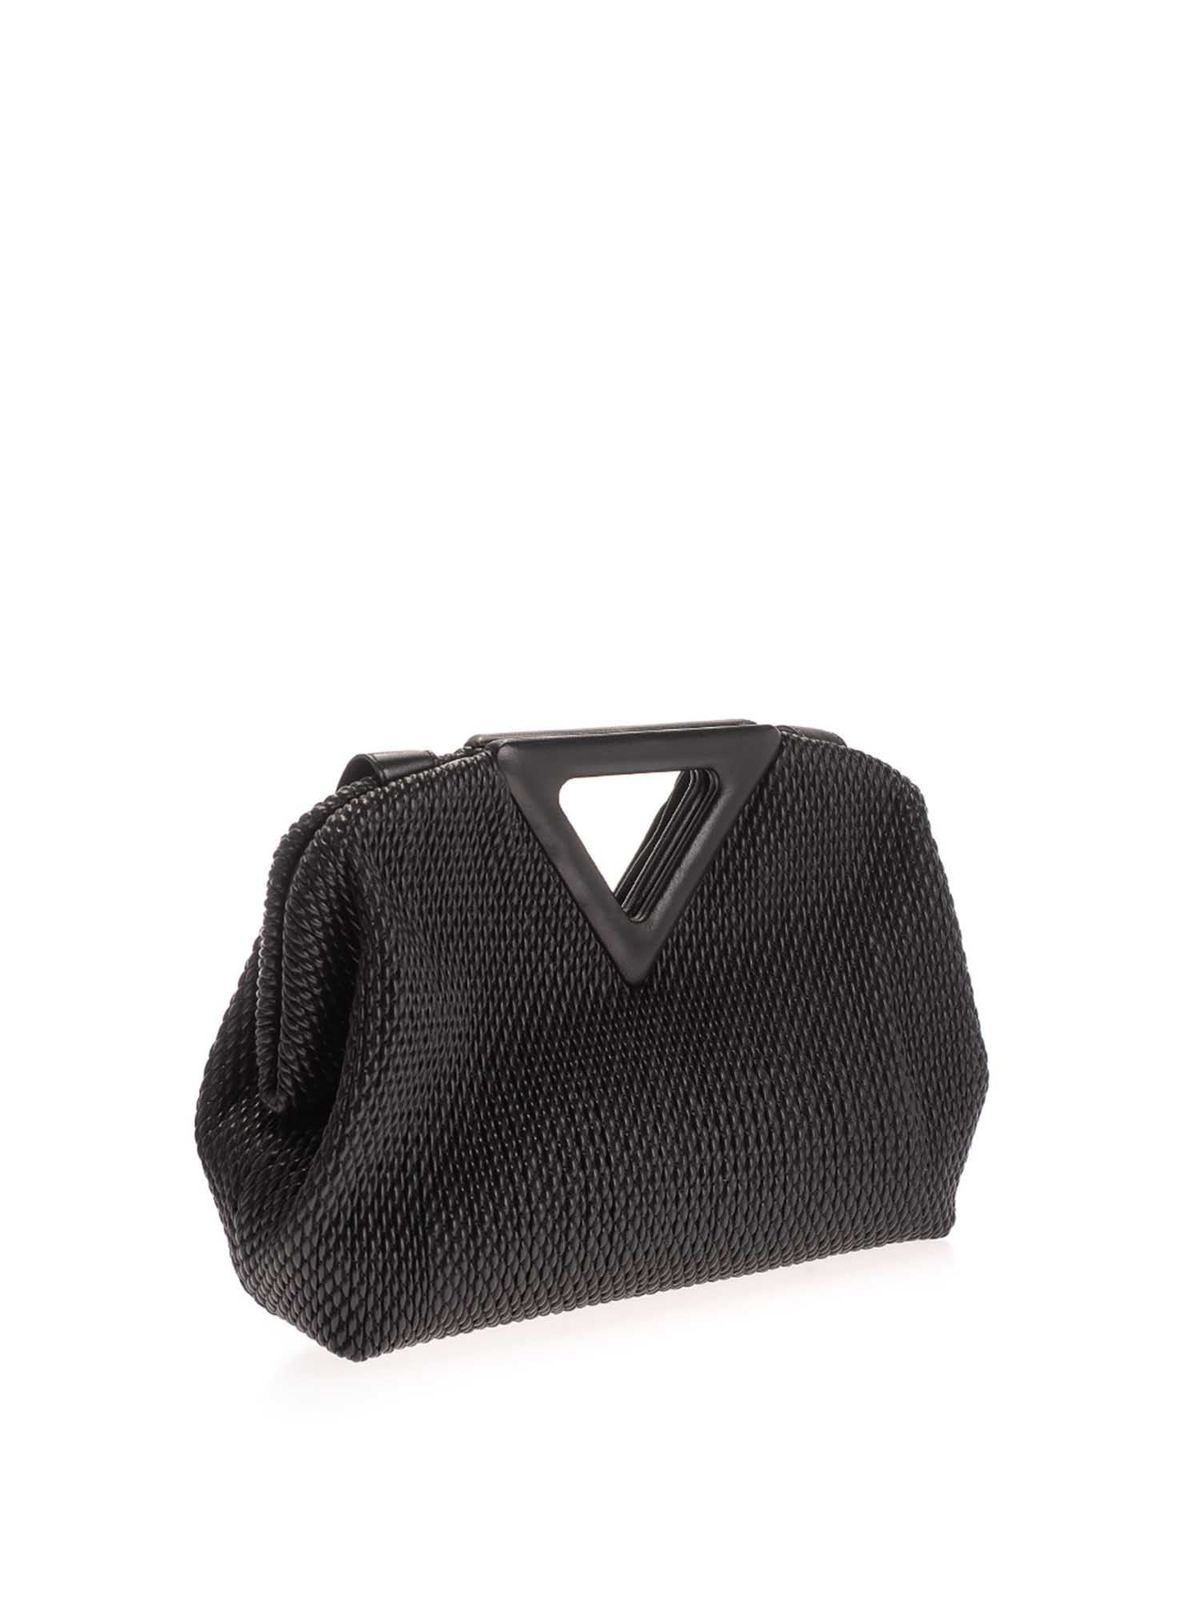 Totes bags Bottega Veneta - Point bag in black - 658720V0TB18803